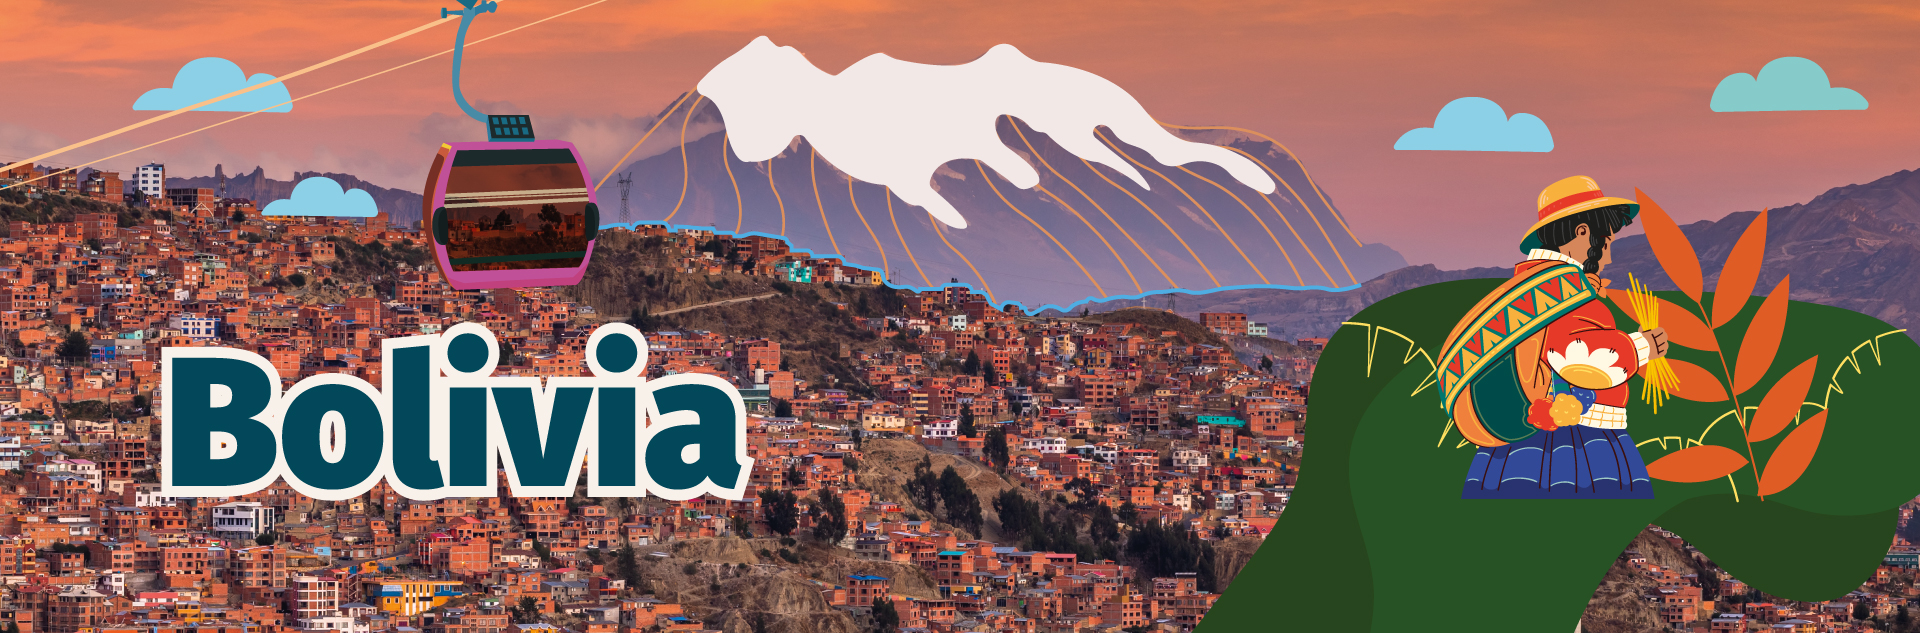 Bolivia, vista panorámica de la ciudad de La Paz, cordillera de los andes de fondo